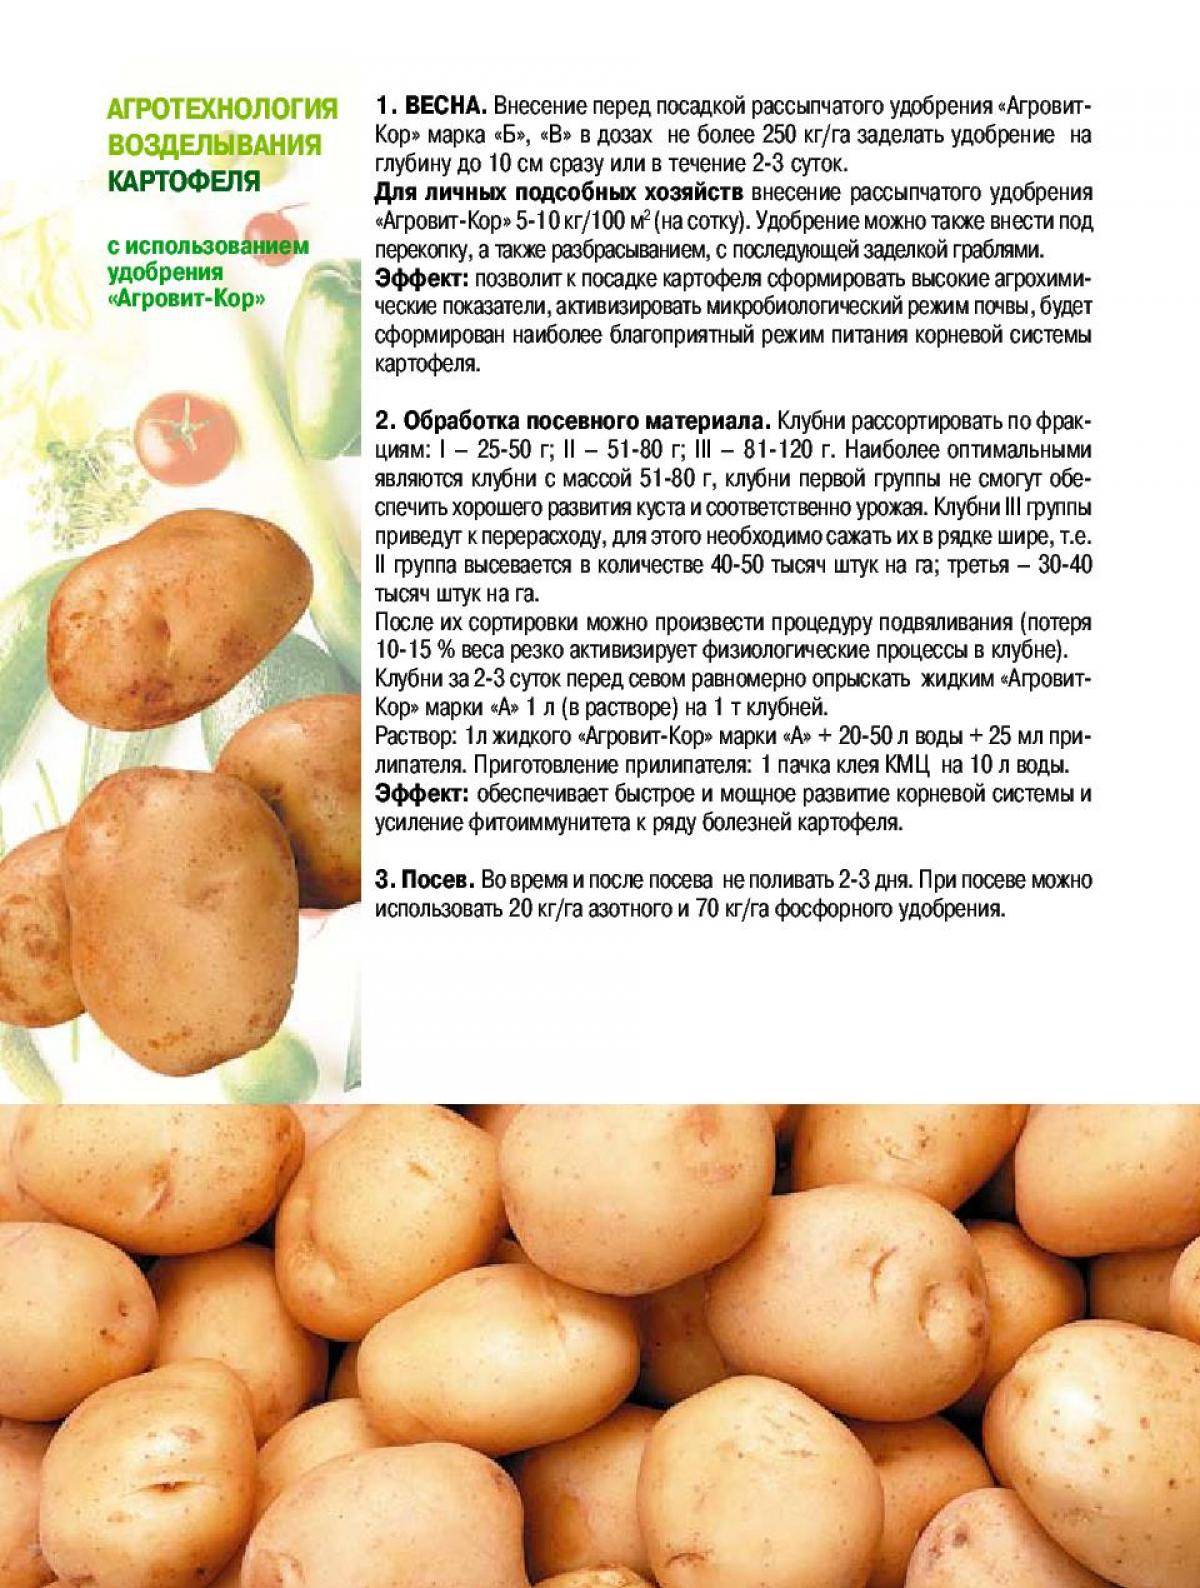 Картофель славянка: описание и характеристики сорта, посадка и уход, отзывы с фото